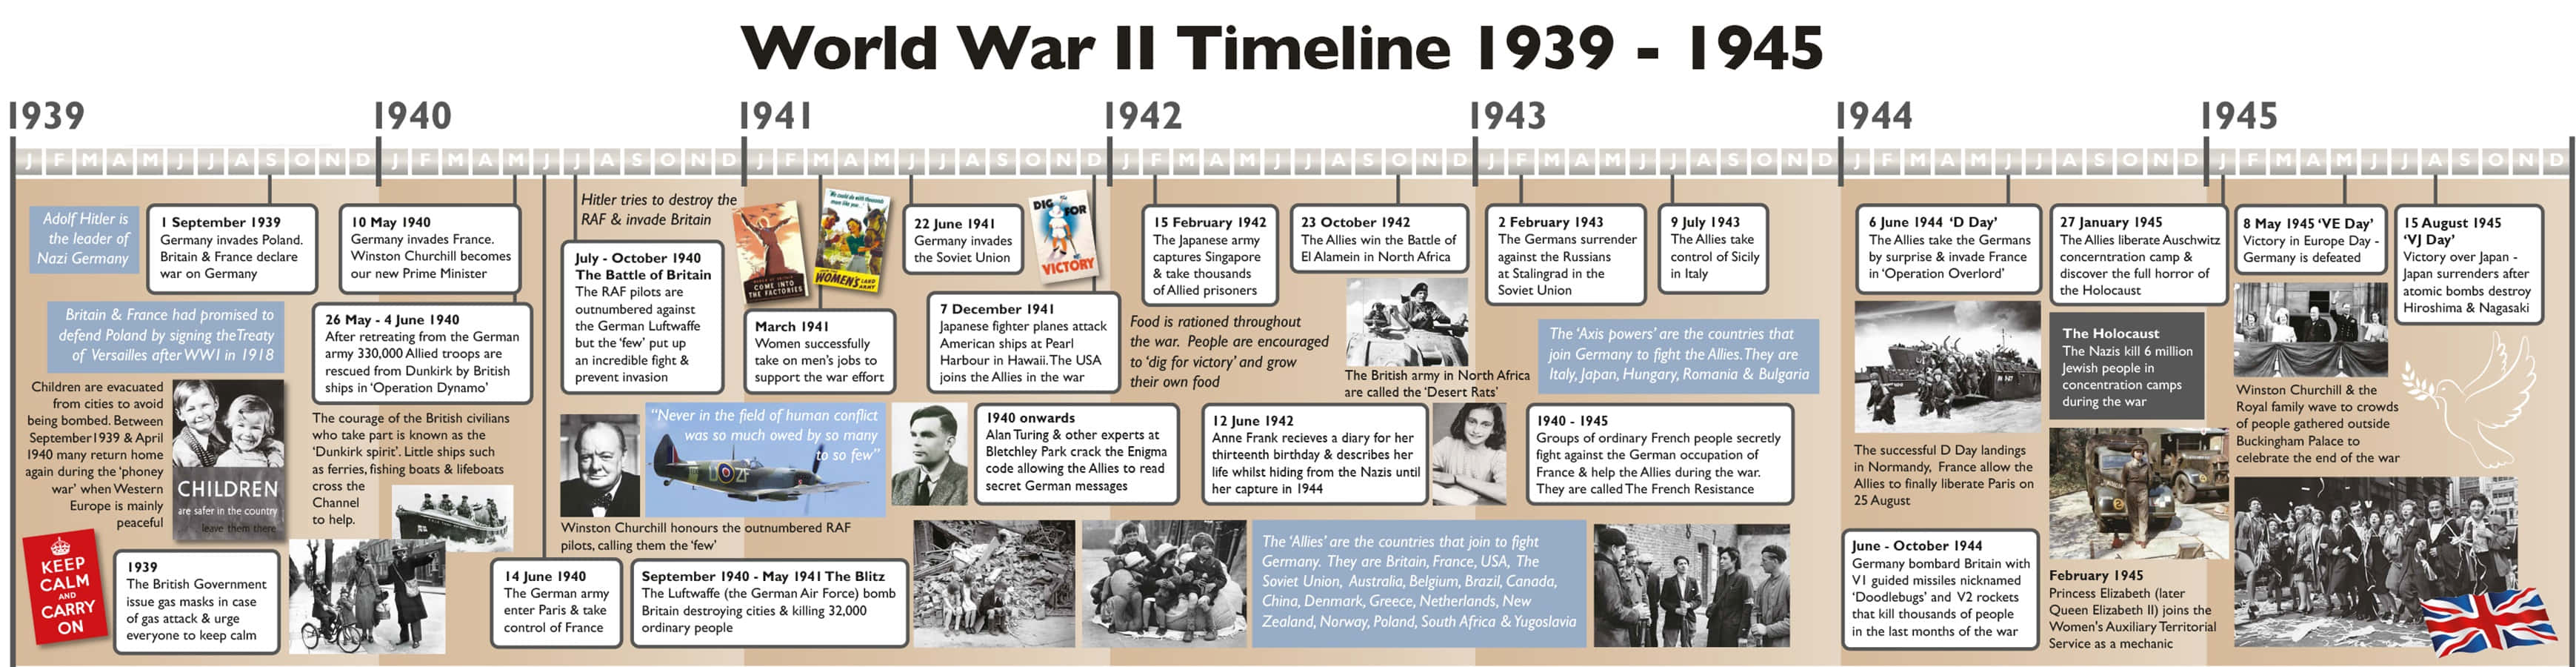 World War I Timeline 1945